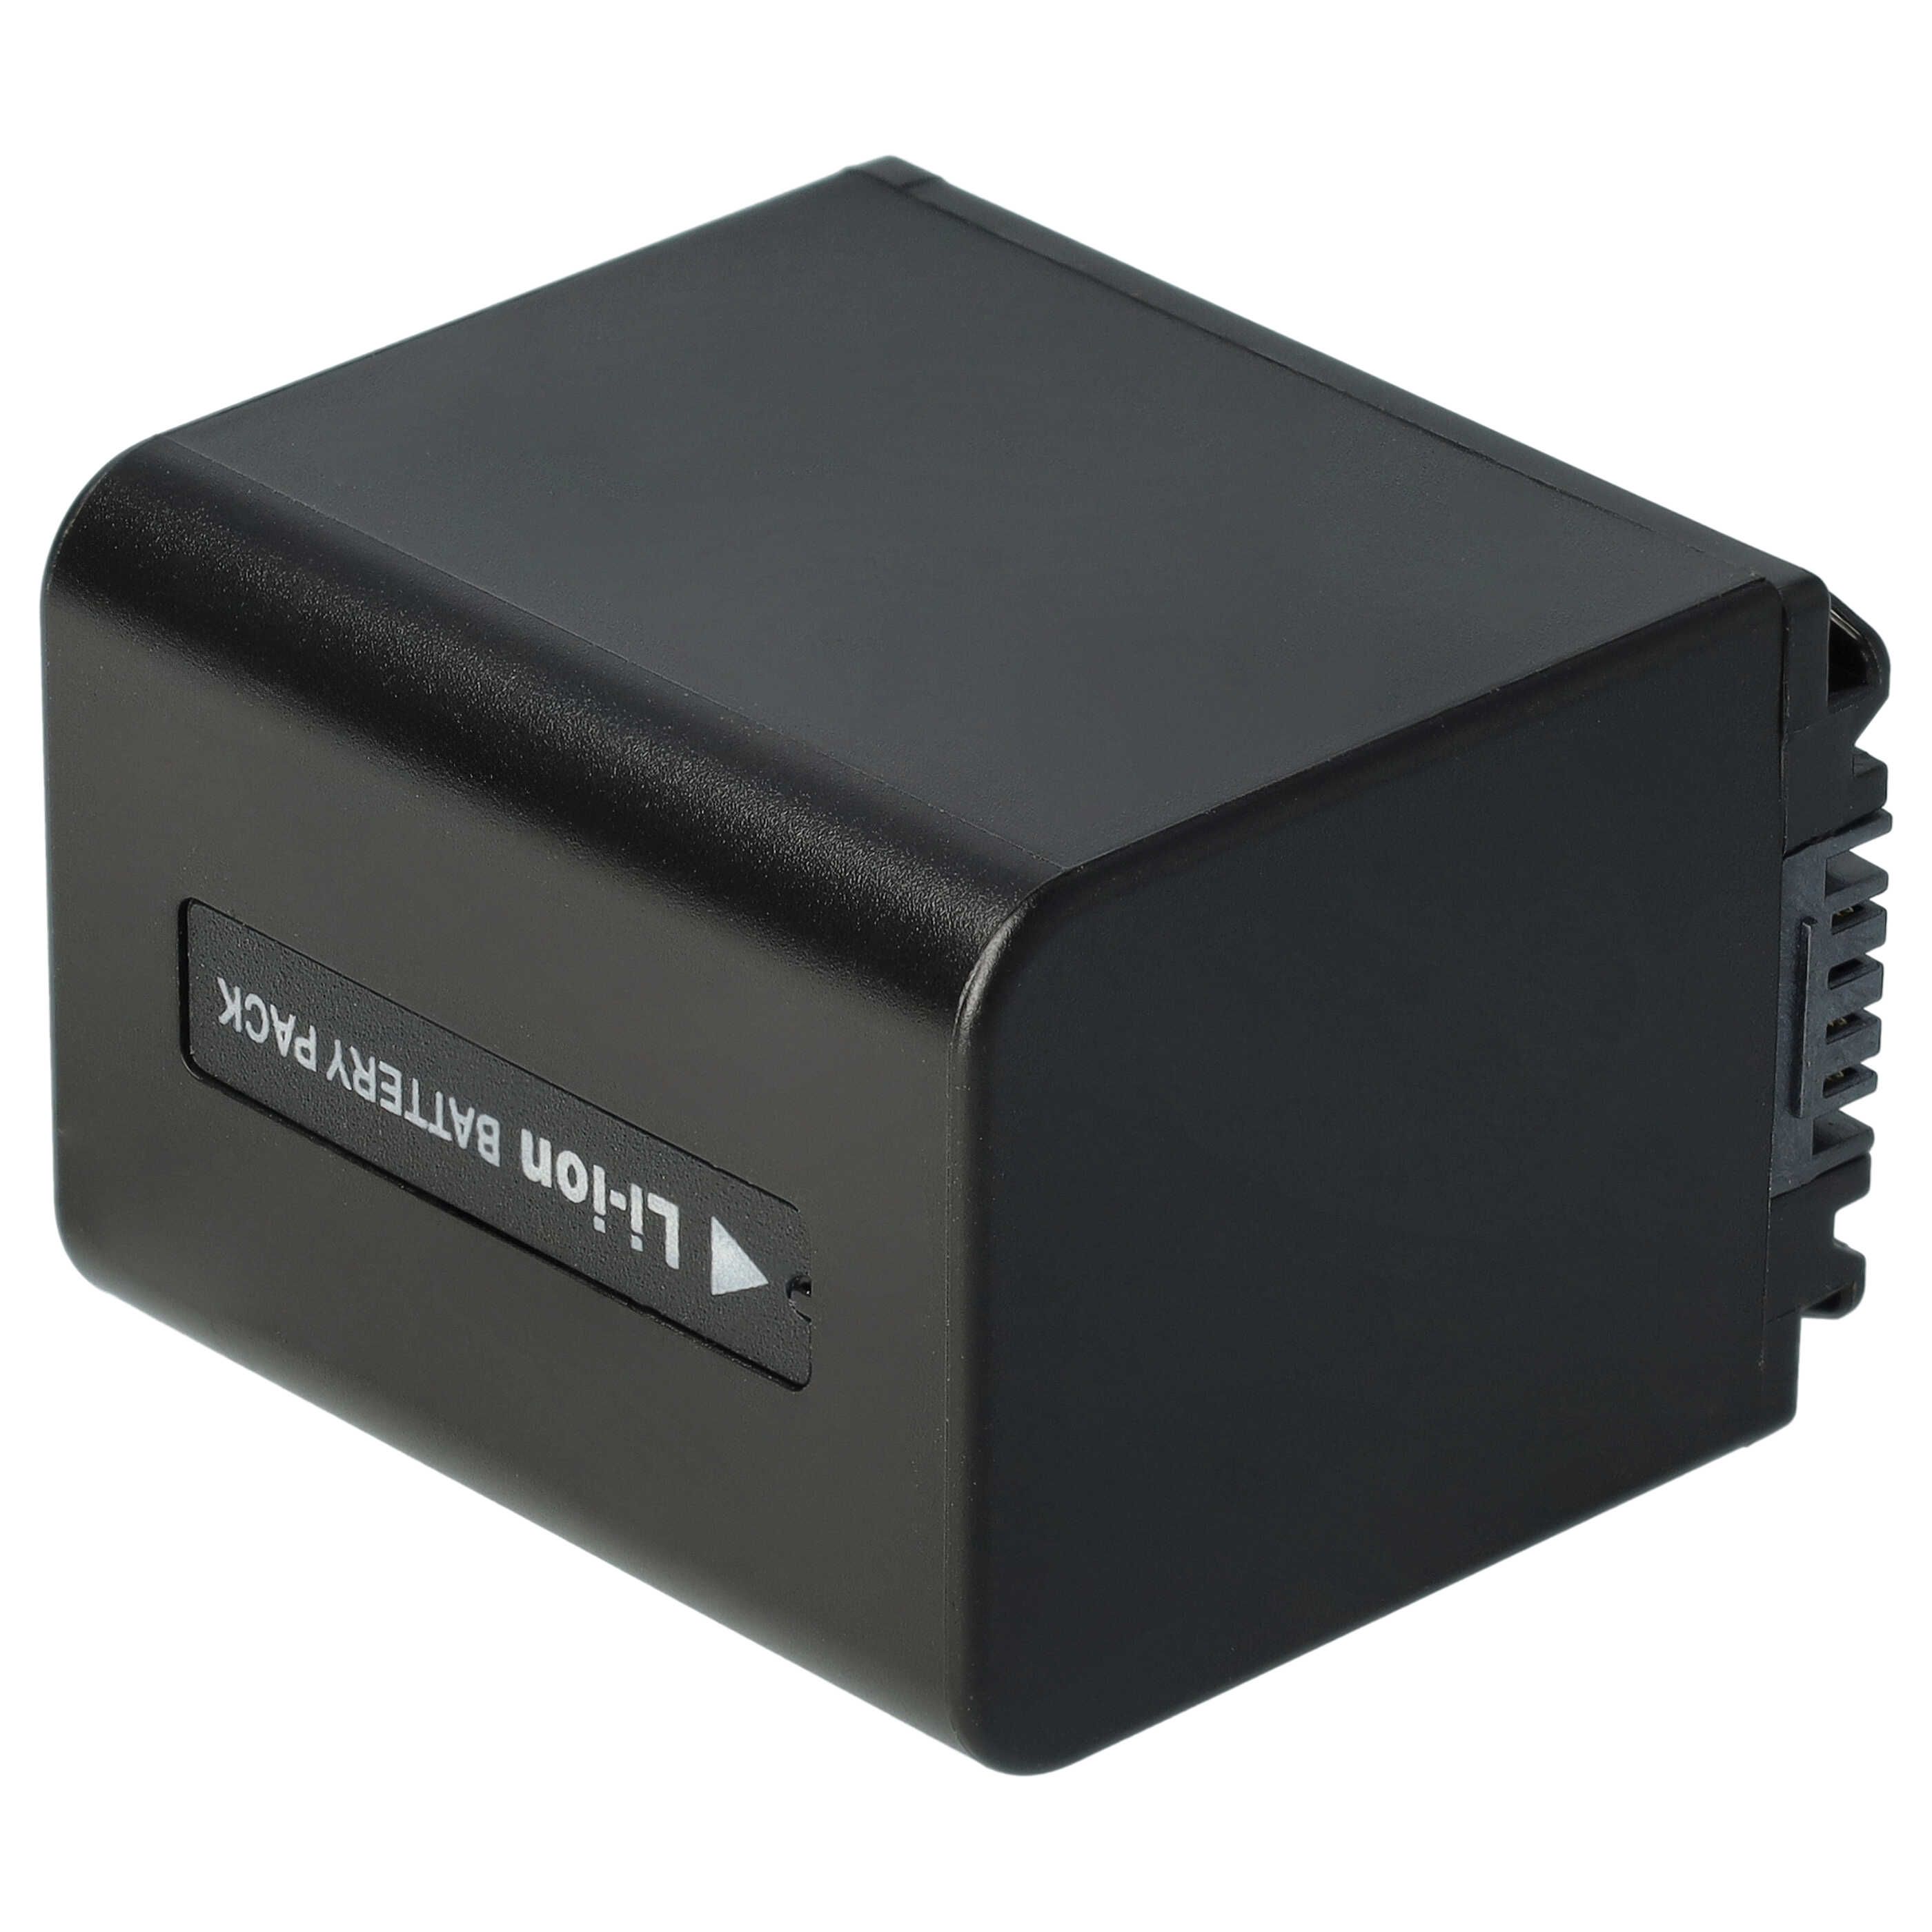 Batterie remplace Sony NP-FV70 pour caméscope - 1300mAh 7,2V Li-ion avec puce